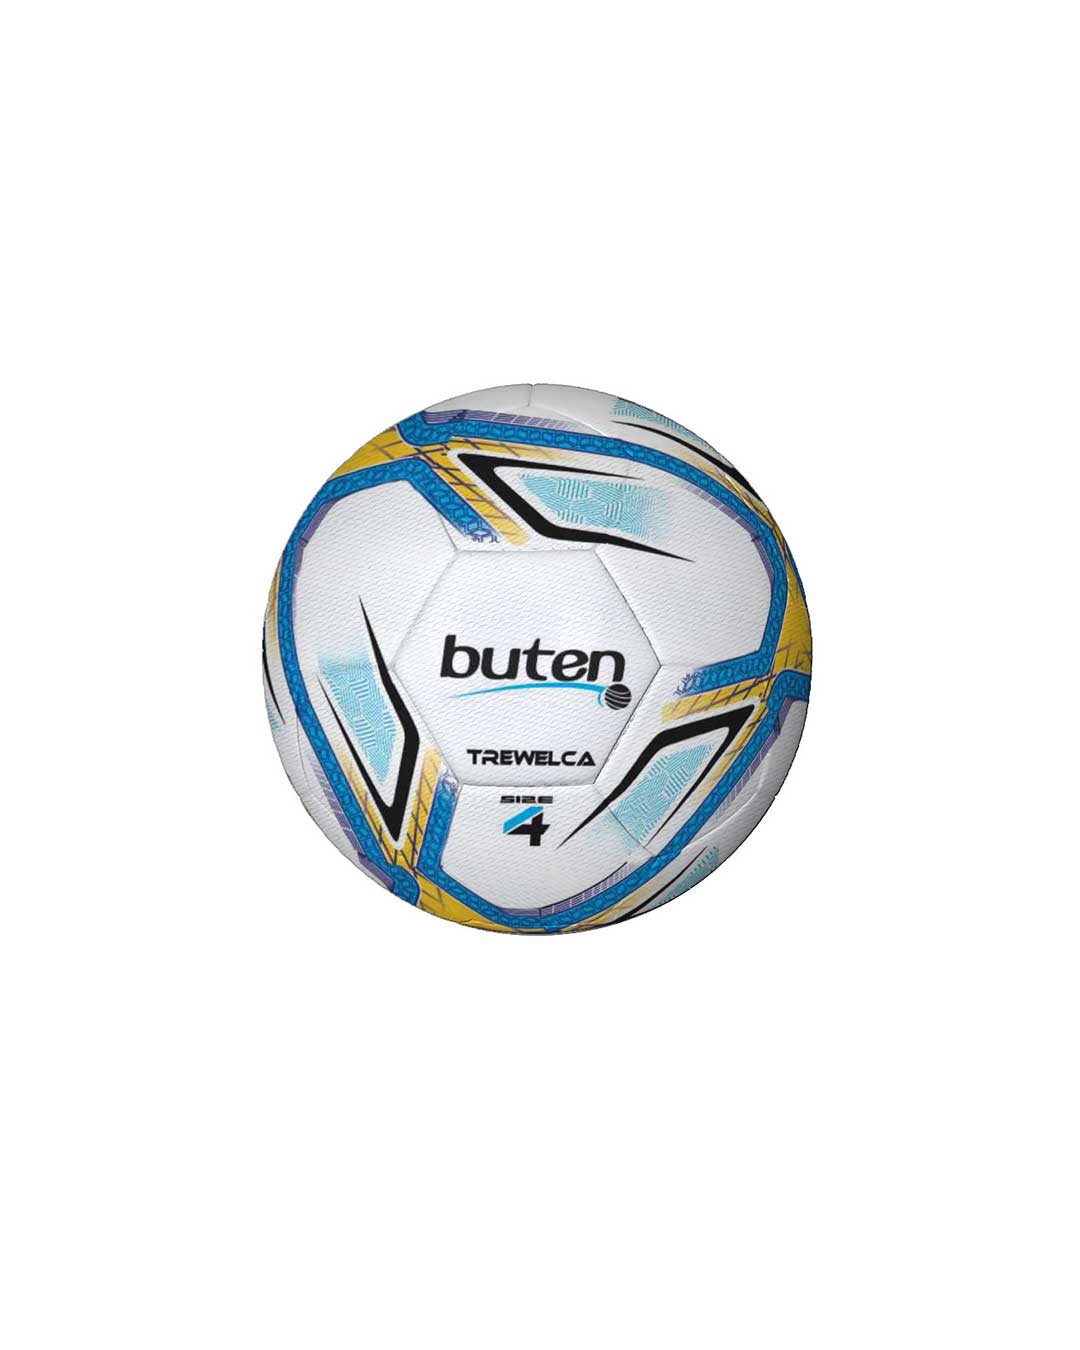 Balón de Fútbol N° 4 marca Buten (Bote alto) Trewalka